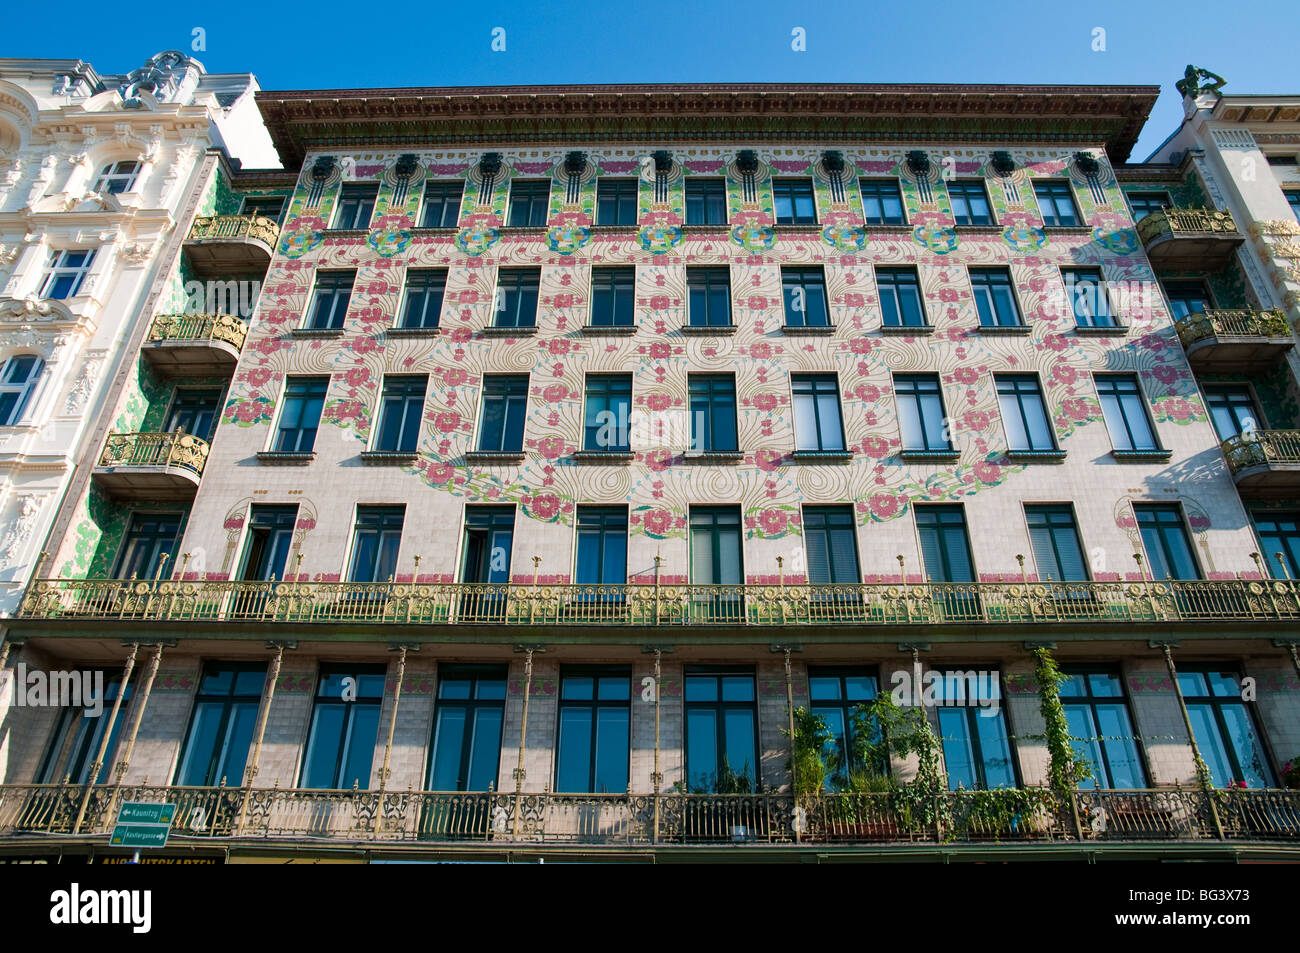 Jugendstilhaus an der Wienzeile, Wien, Österreich | art nouveau building on Wienzeile, Vienna, Austria  Stock Photo